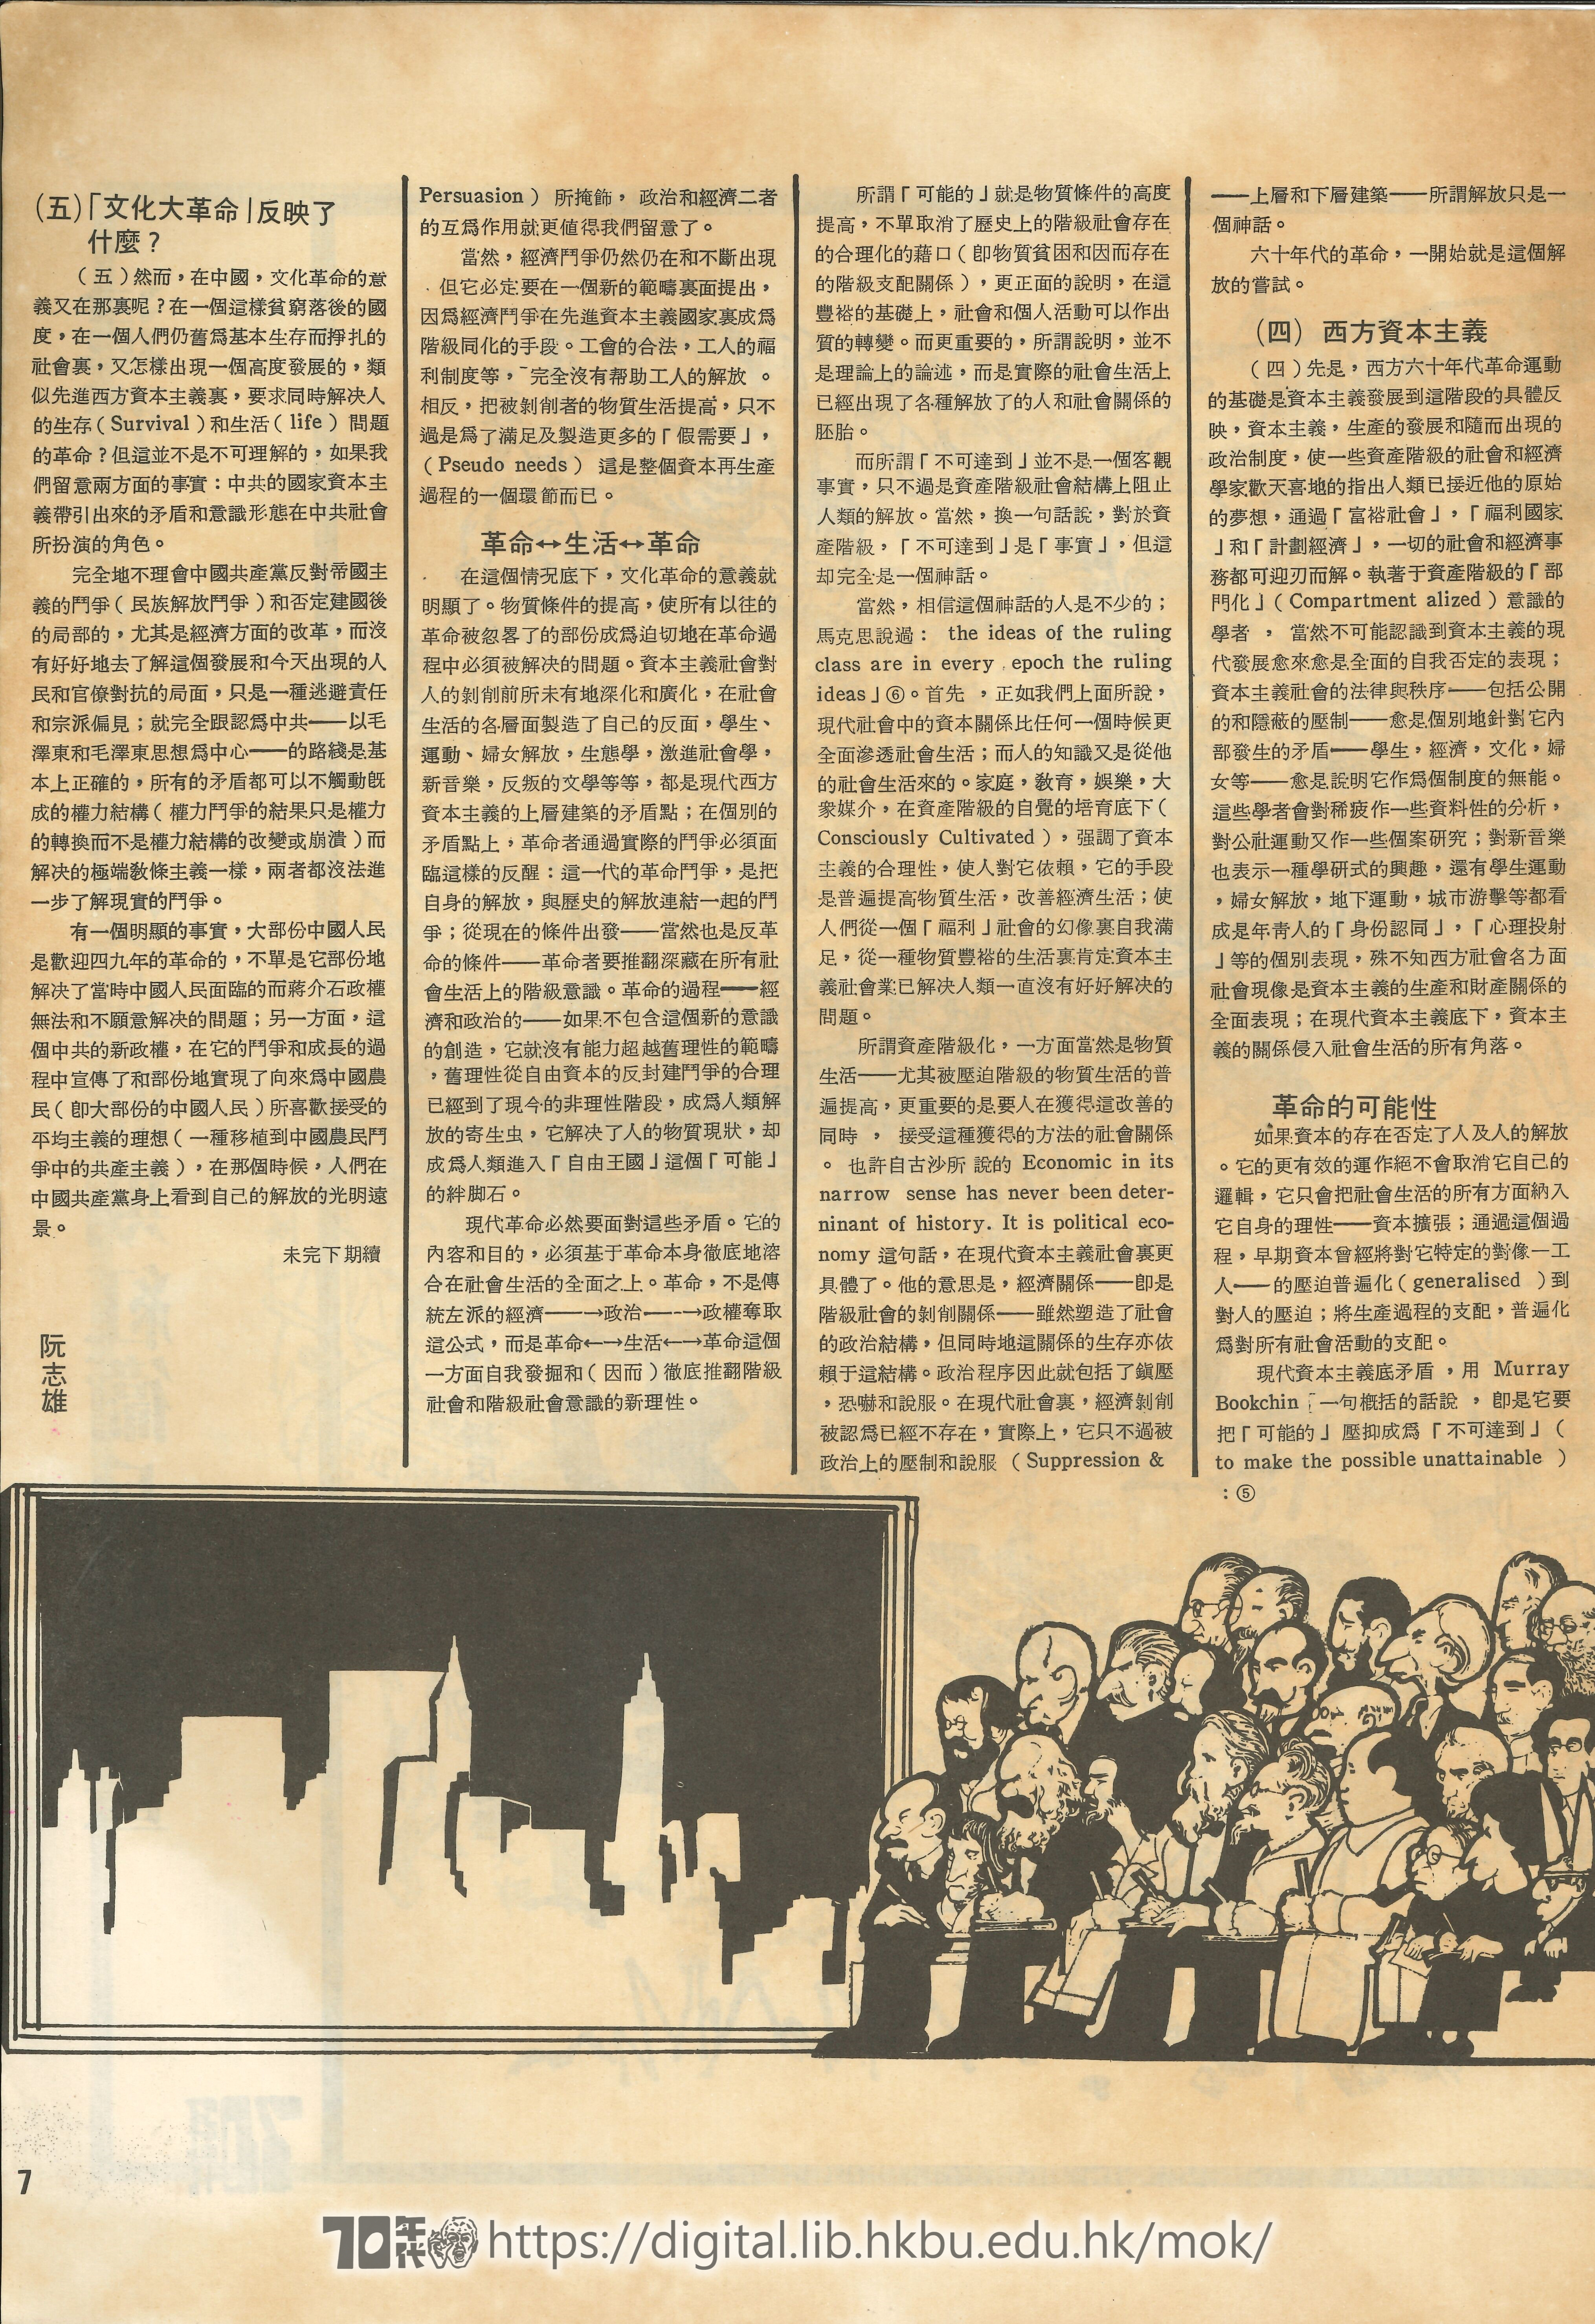  復刊（創刊號） Growth of a revolution - cultural revolution in the east of the 1960s I 沅志雄 